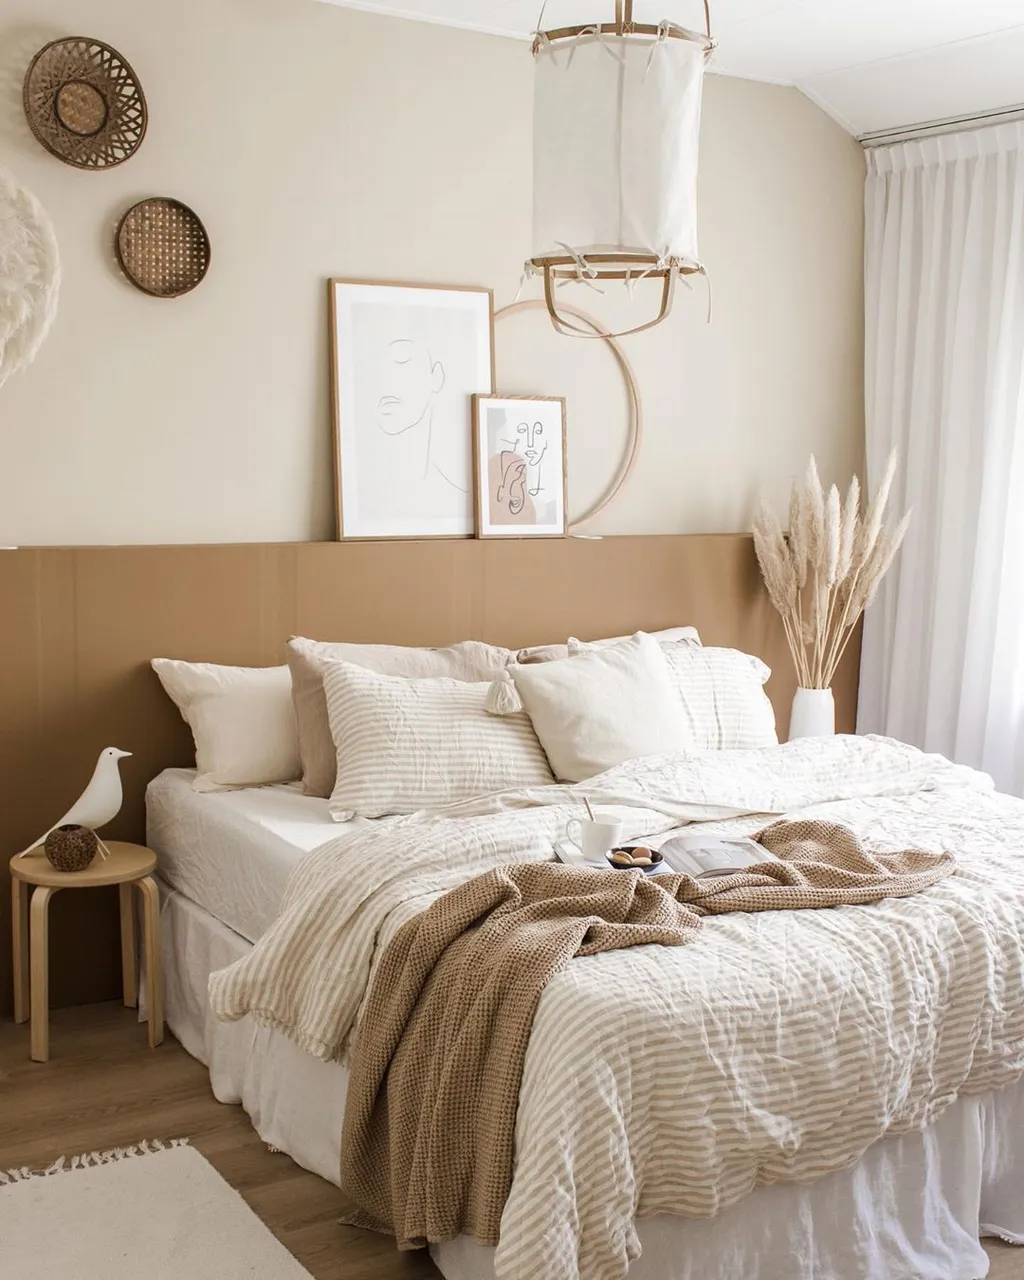 Tường phòng ngủ màu be nhẹ nhàng kết hợp với đồ nội thất và trang trí mộc mạc tự nhiên